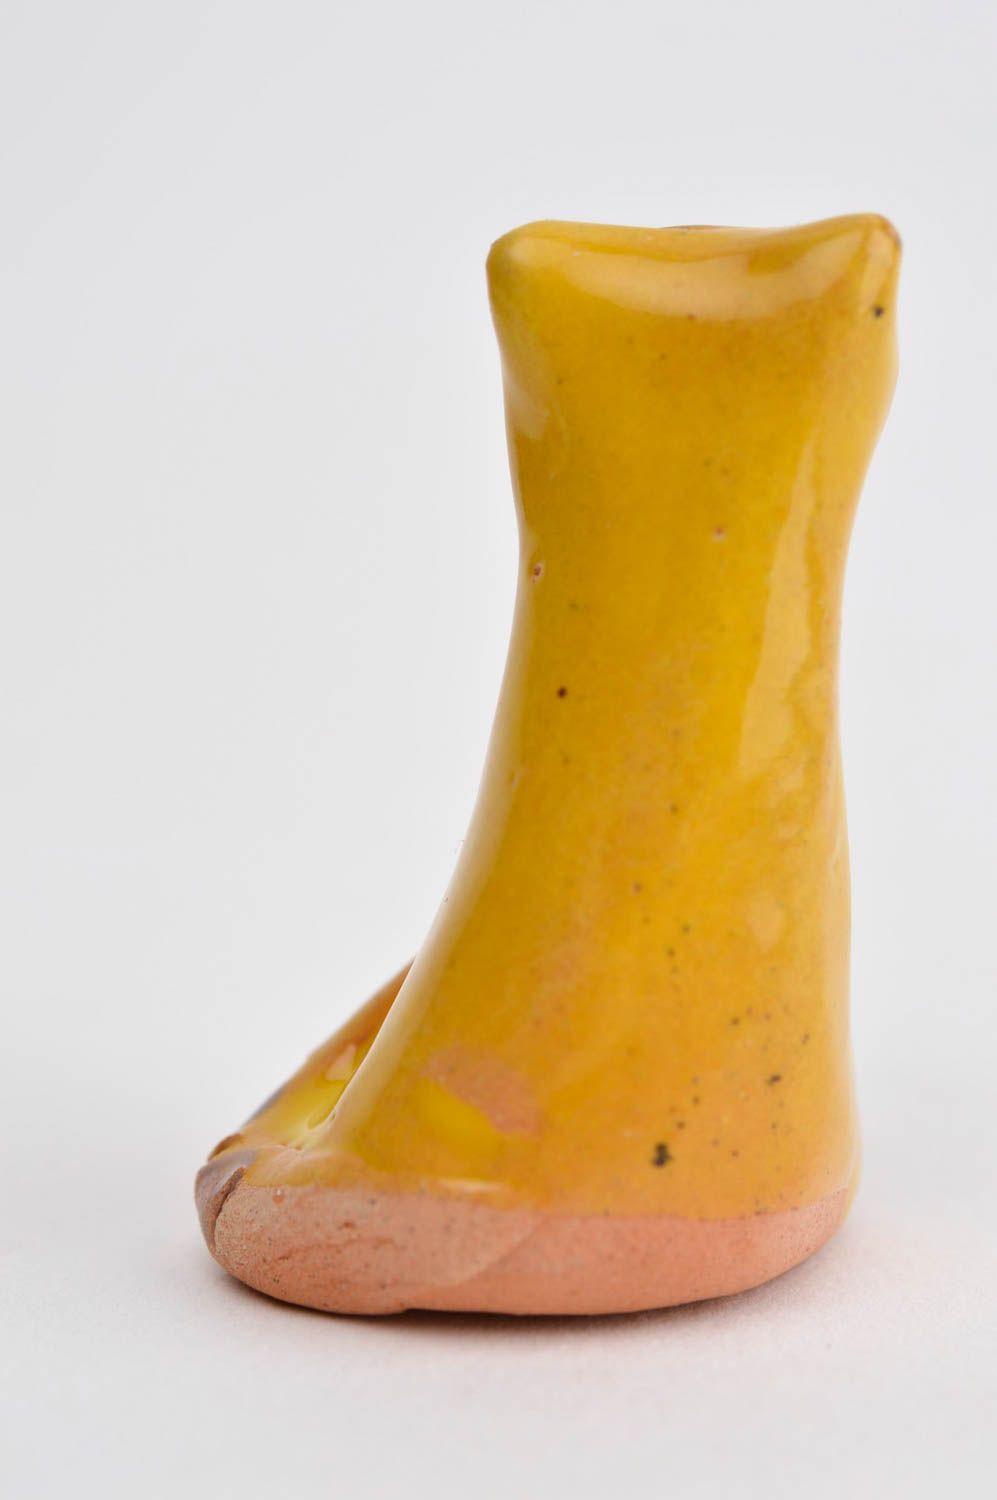 Figurine chat Statuette miniature fait main argile peint jaune Déco maison photo 10